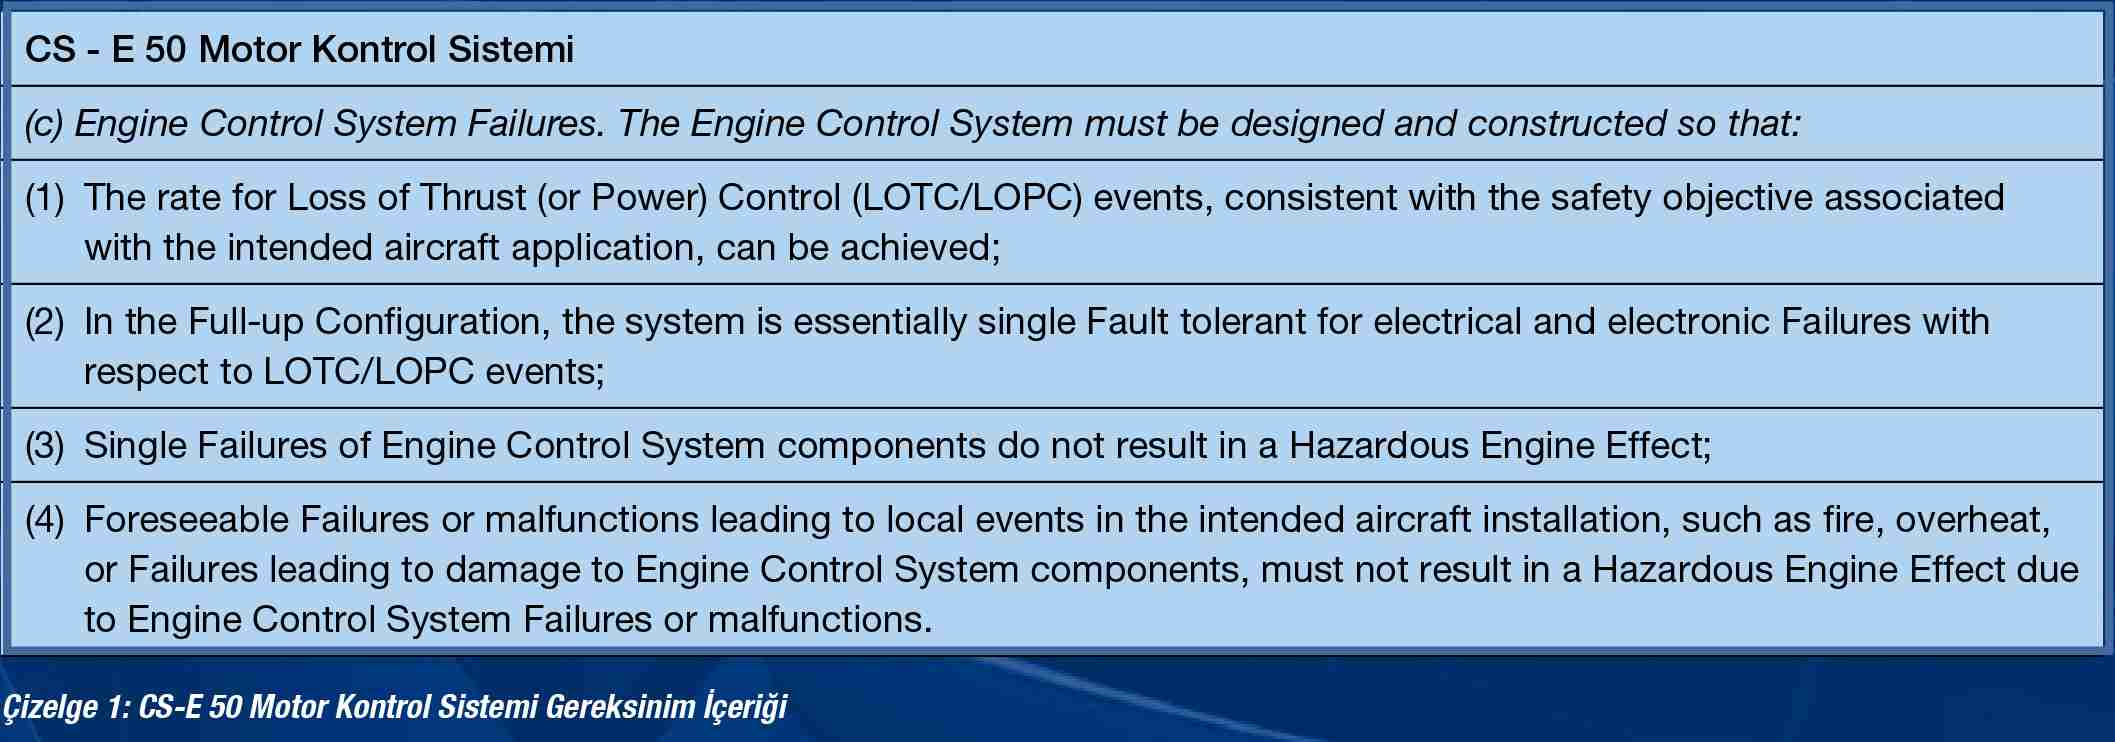 Bir havacılık turboşaft motoru motor kontrol sistemi tasarımında emniyet uyum gösterimi için gerçekleştirilen emniyet analizleri